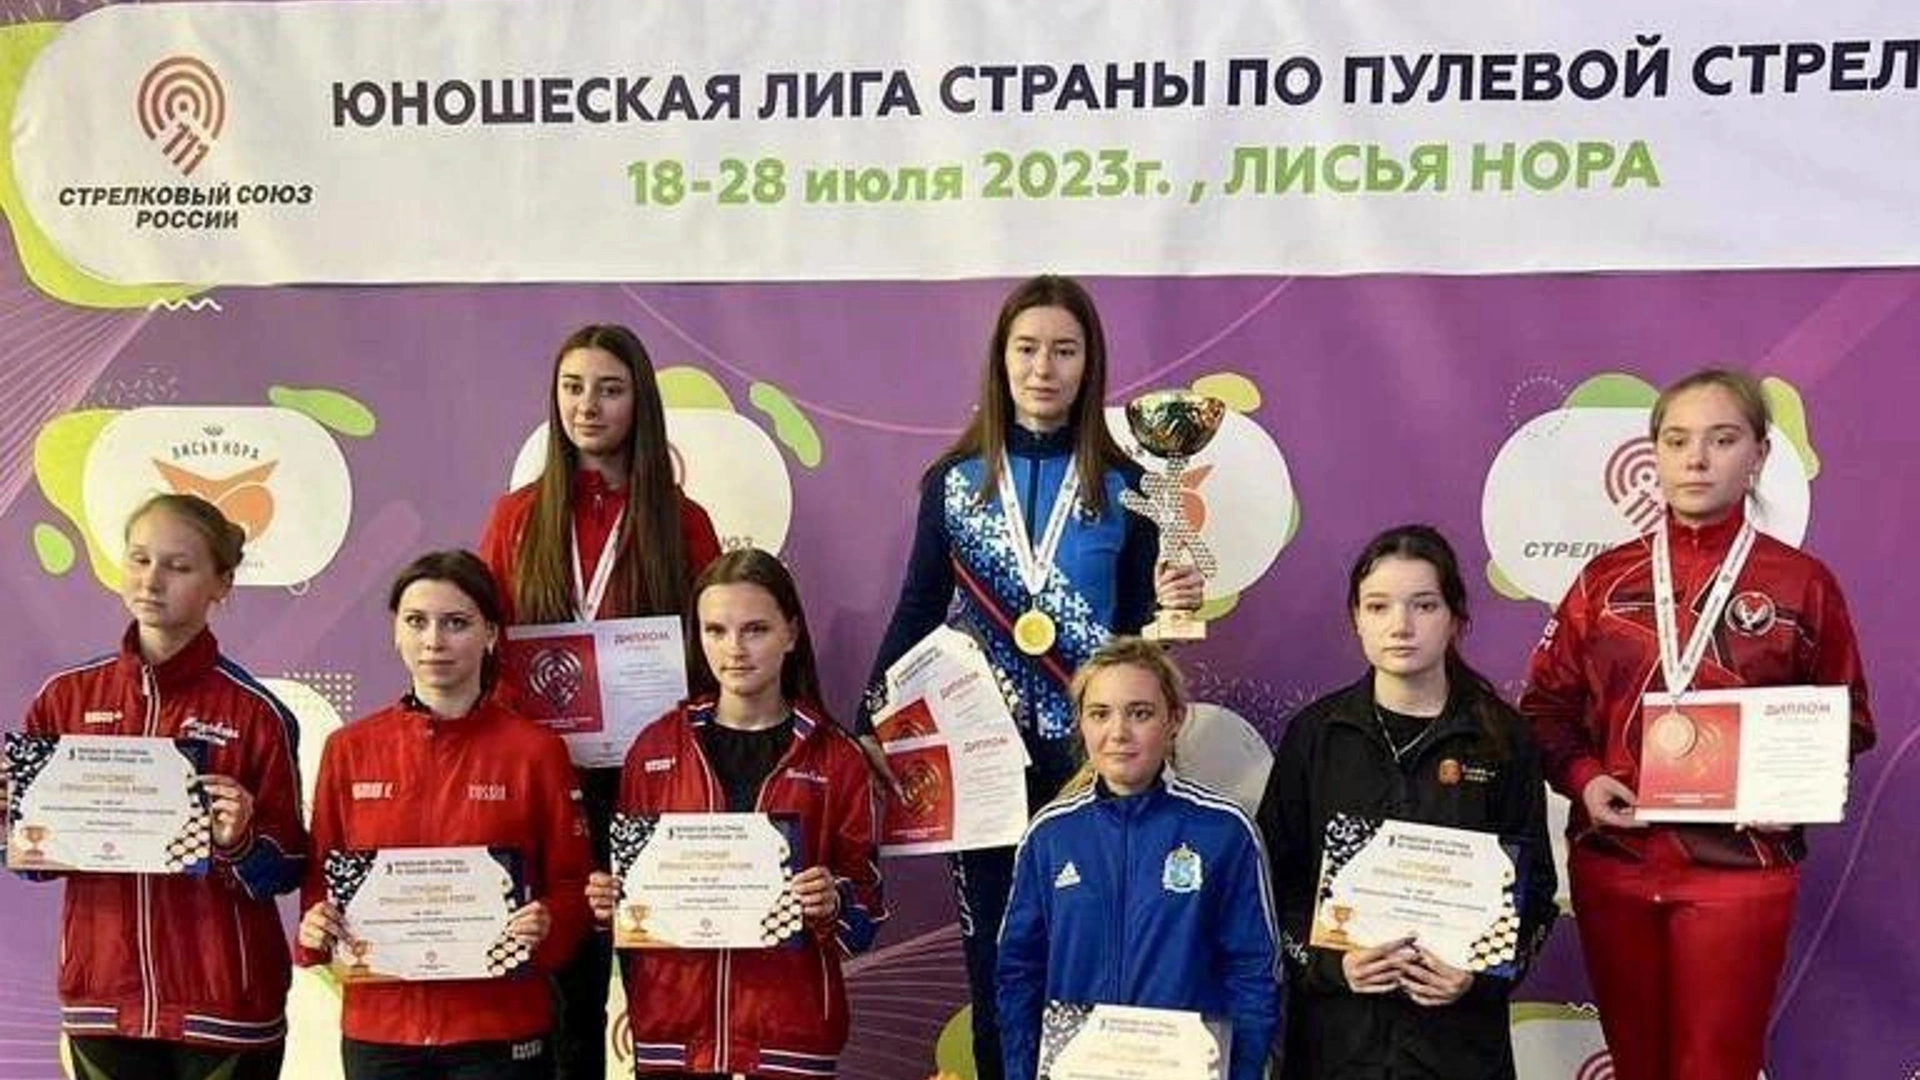 Юная спортсменка из Ноябрьска заняла первое место на Всероссийских соревнованиях по пулевой стрельбе